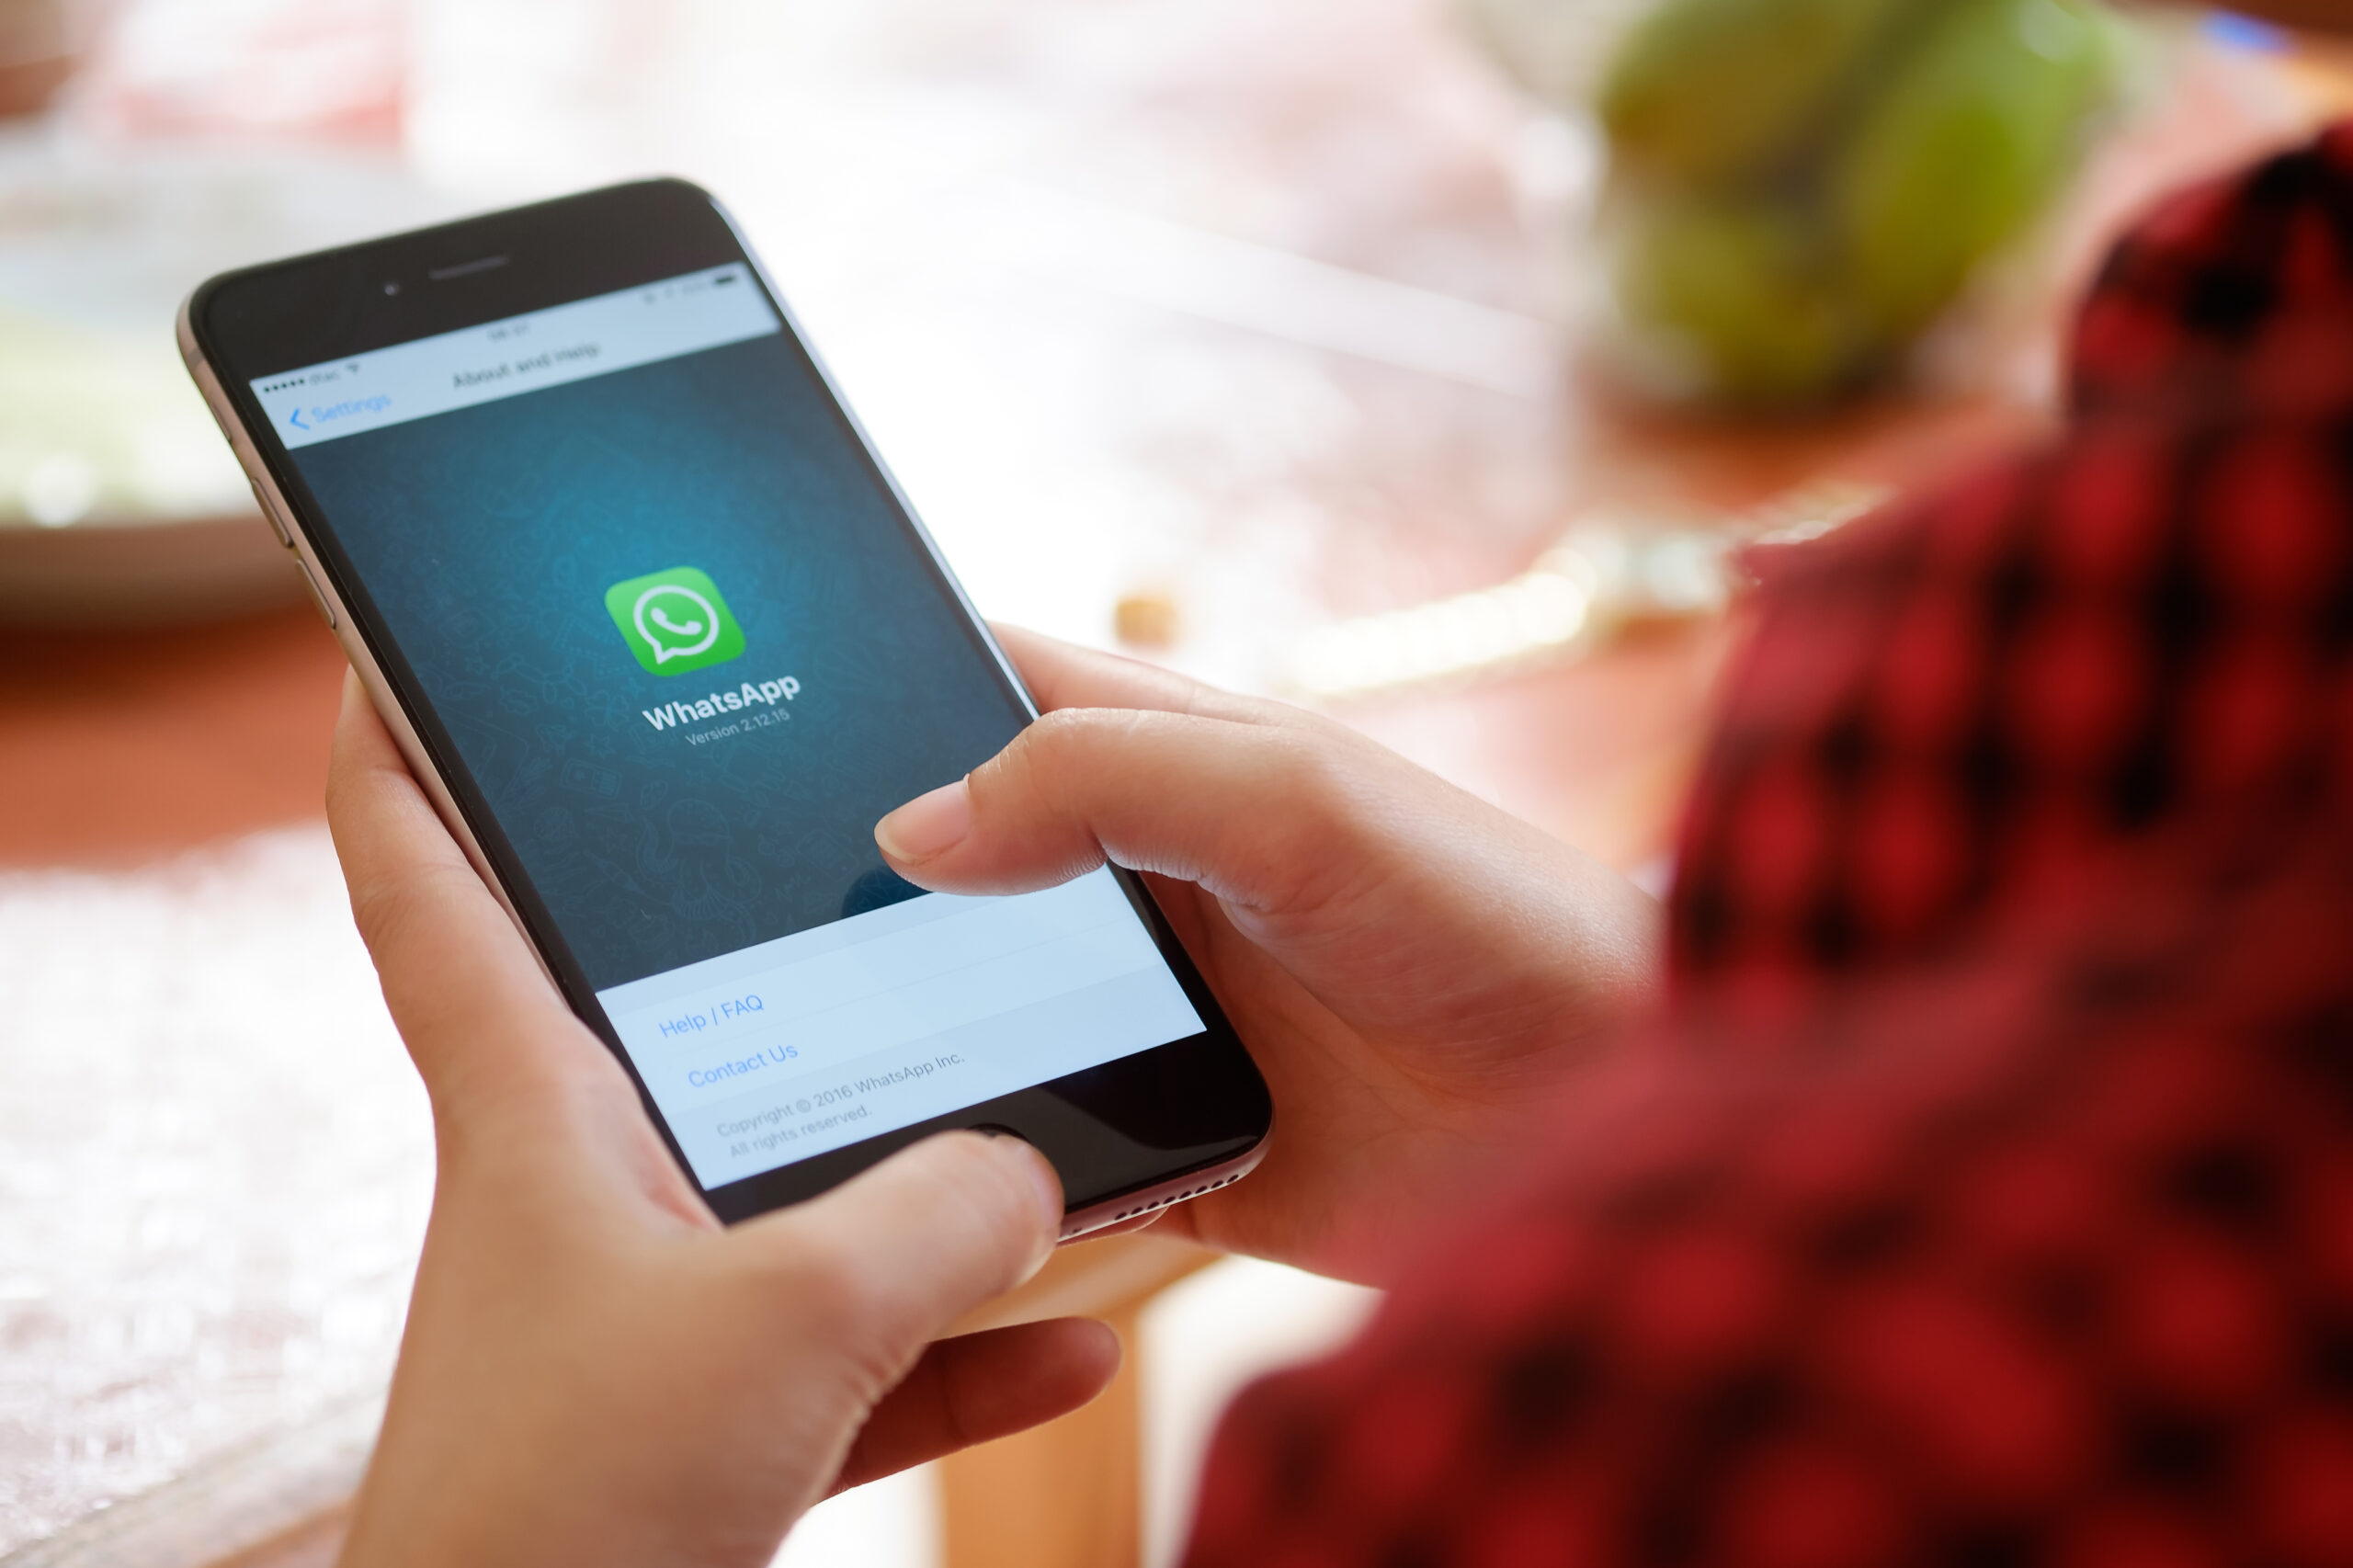 Truque do WhatsApp: descubra se o contato está online sem ser 'pego no flagra'